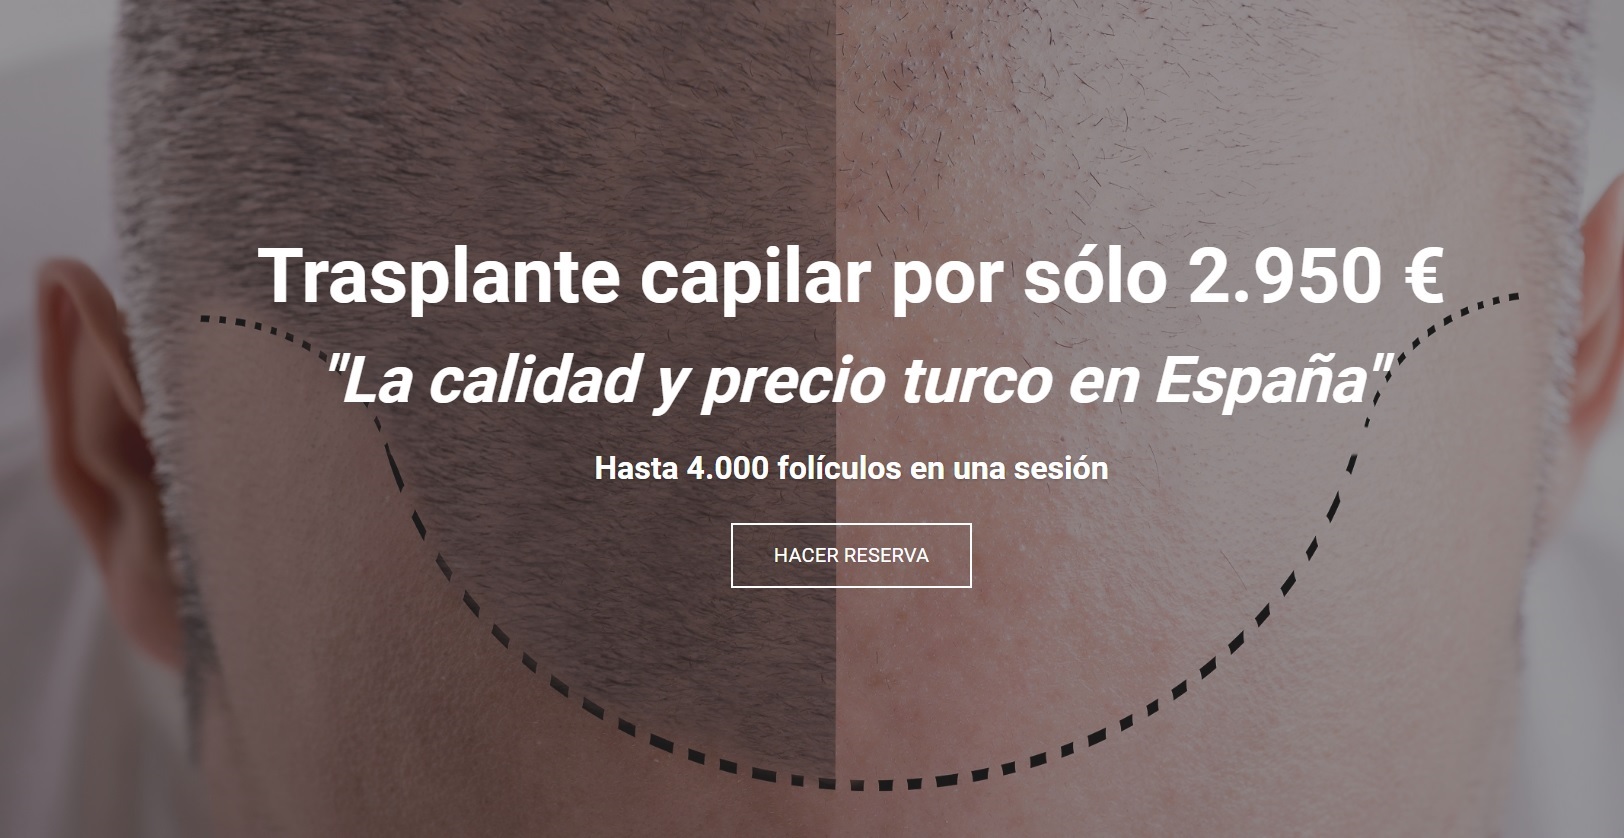 Estambul o el renacimiento del trasplante capilar, ahora en Málaga